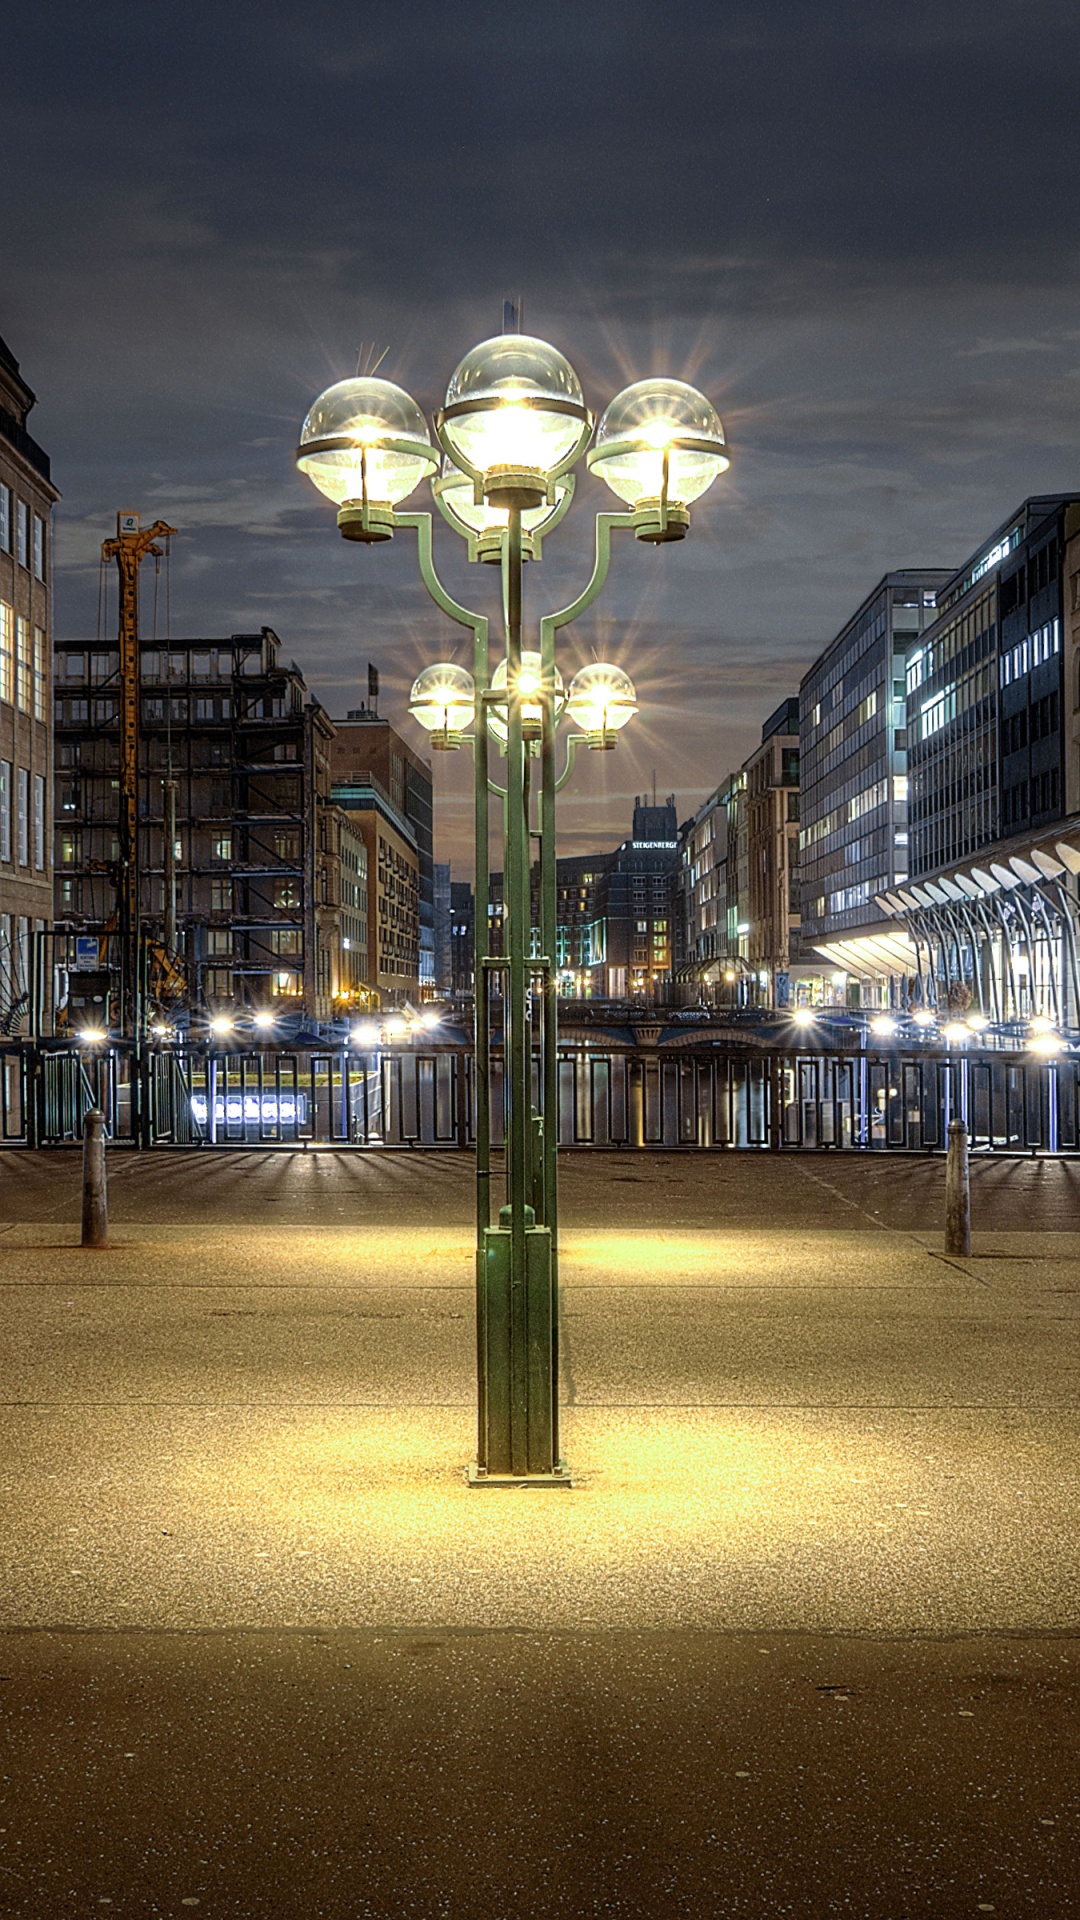 Lampadaires Éclairés au Milieu de la Ville Pendant la Nuit. Wallpaper in 1080x1920 Resolution